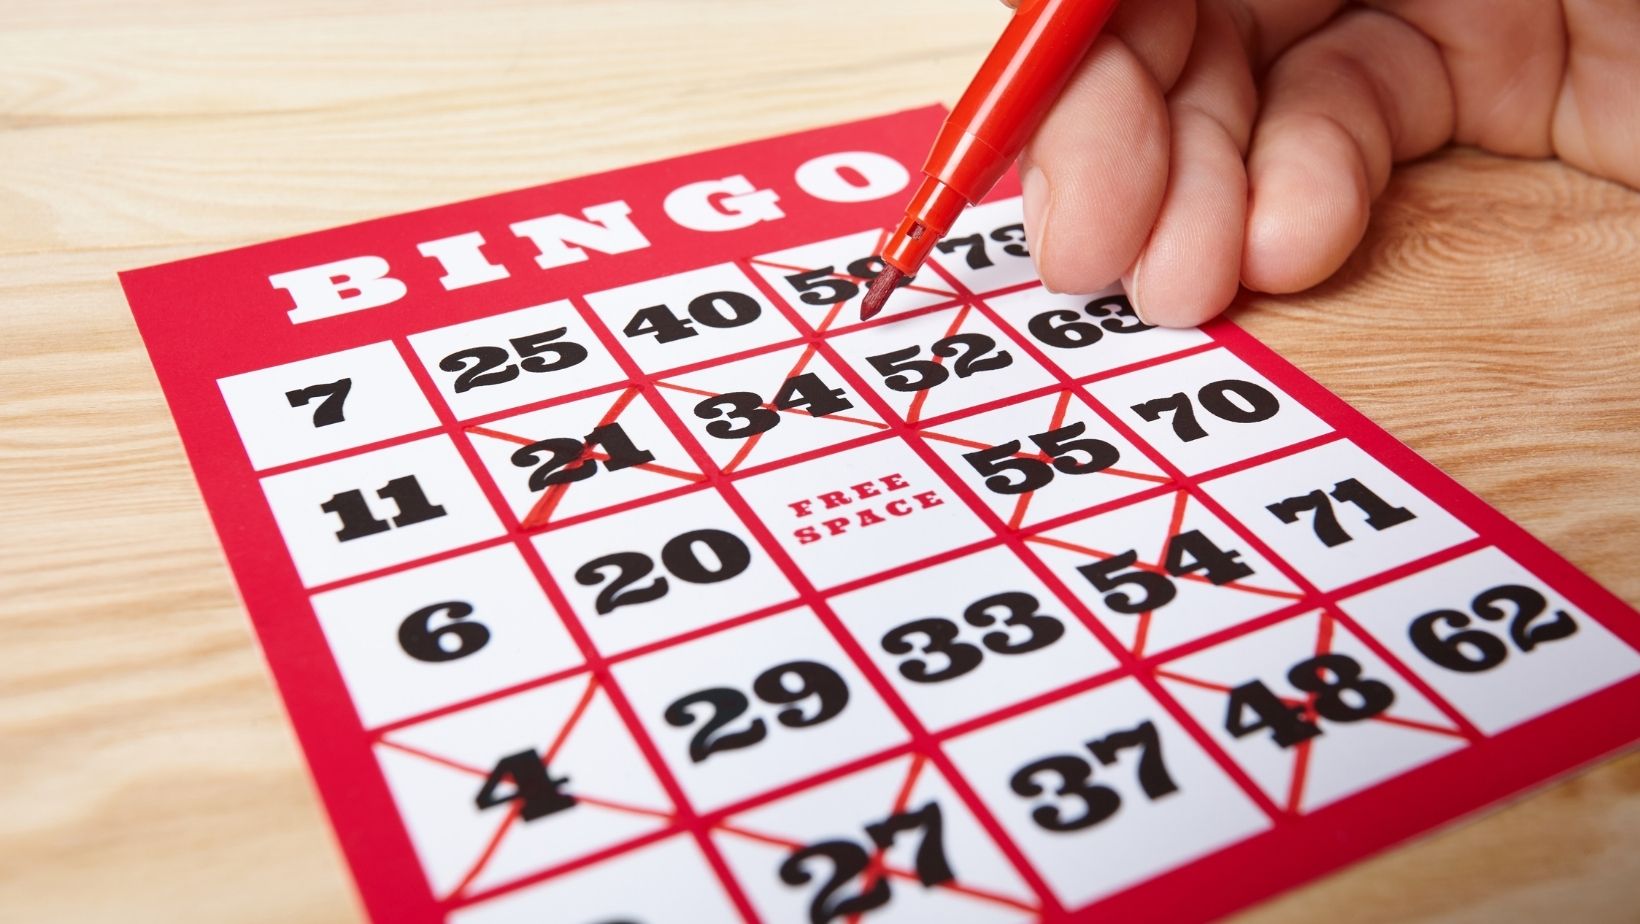 How has online bingo revived bingo 